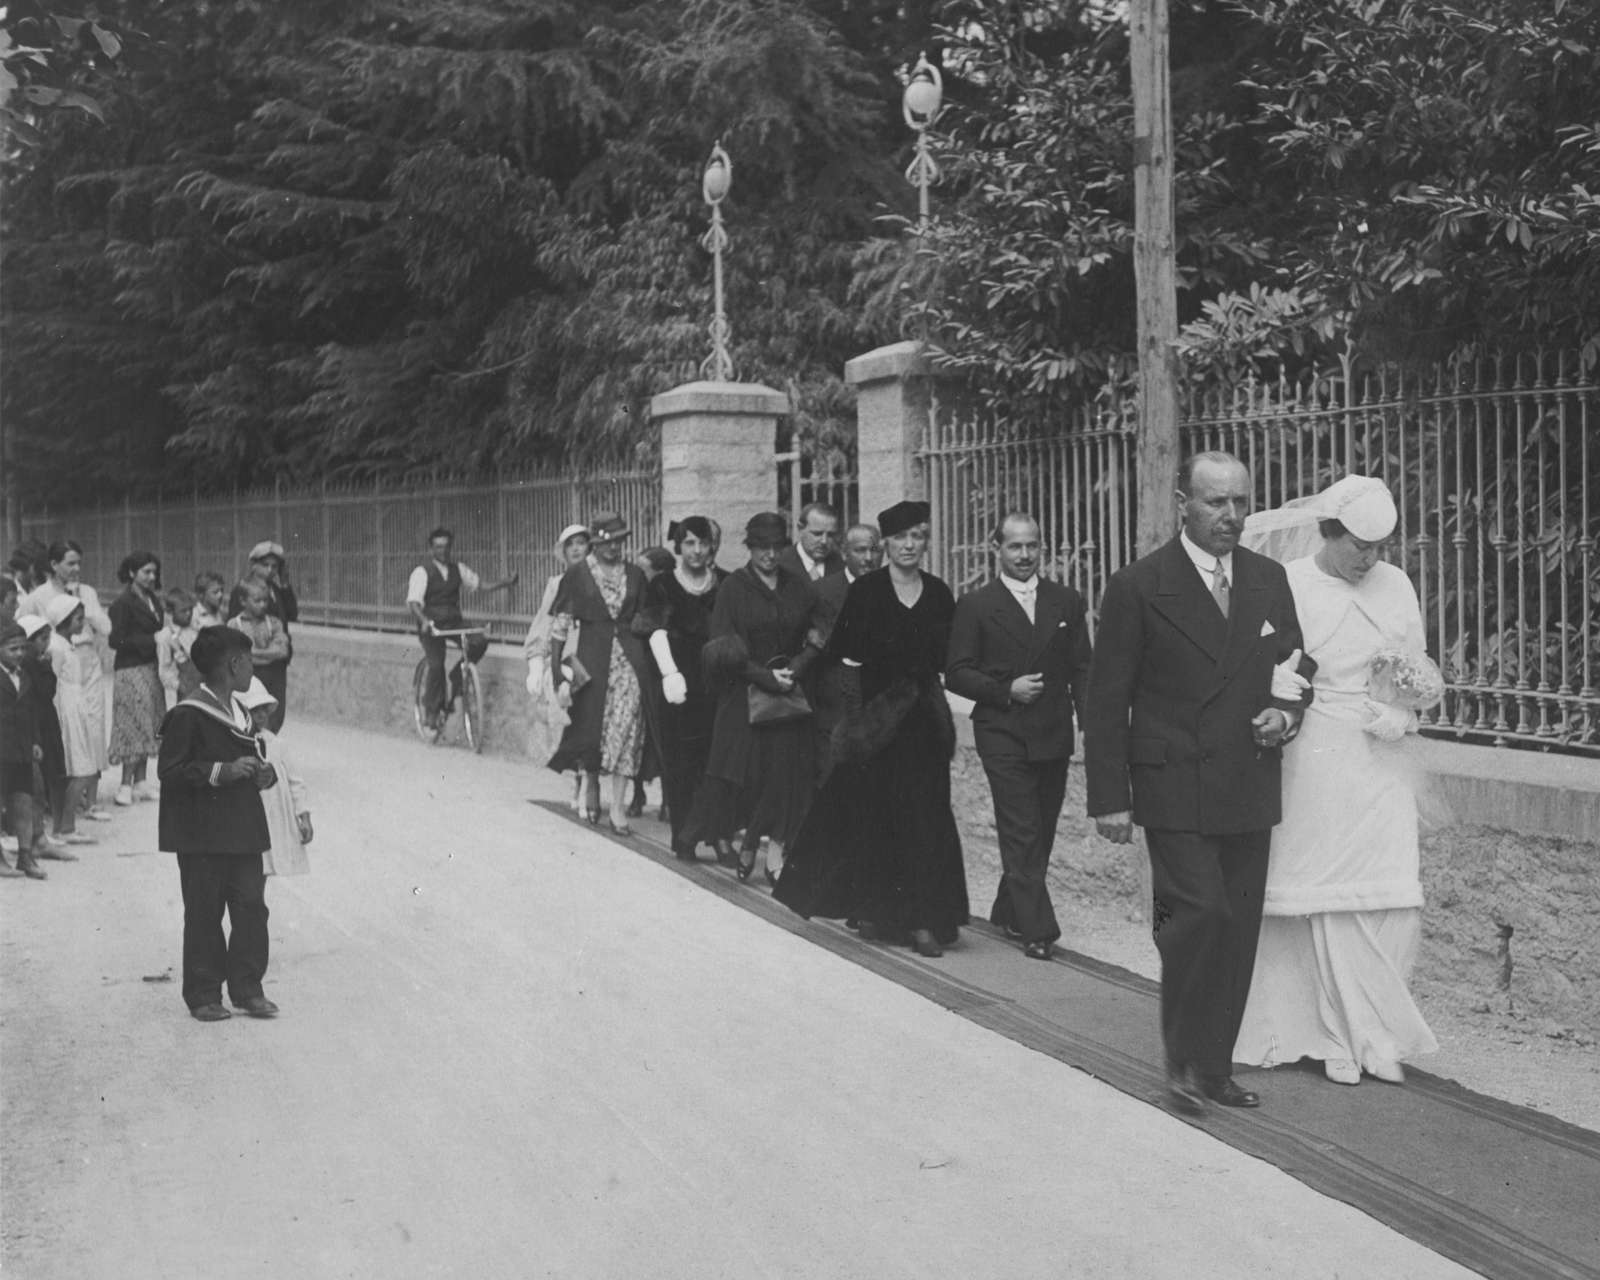 The wedding of Lena Guido with Nestore Ferretti 1933